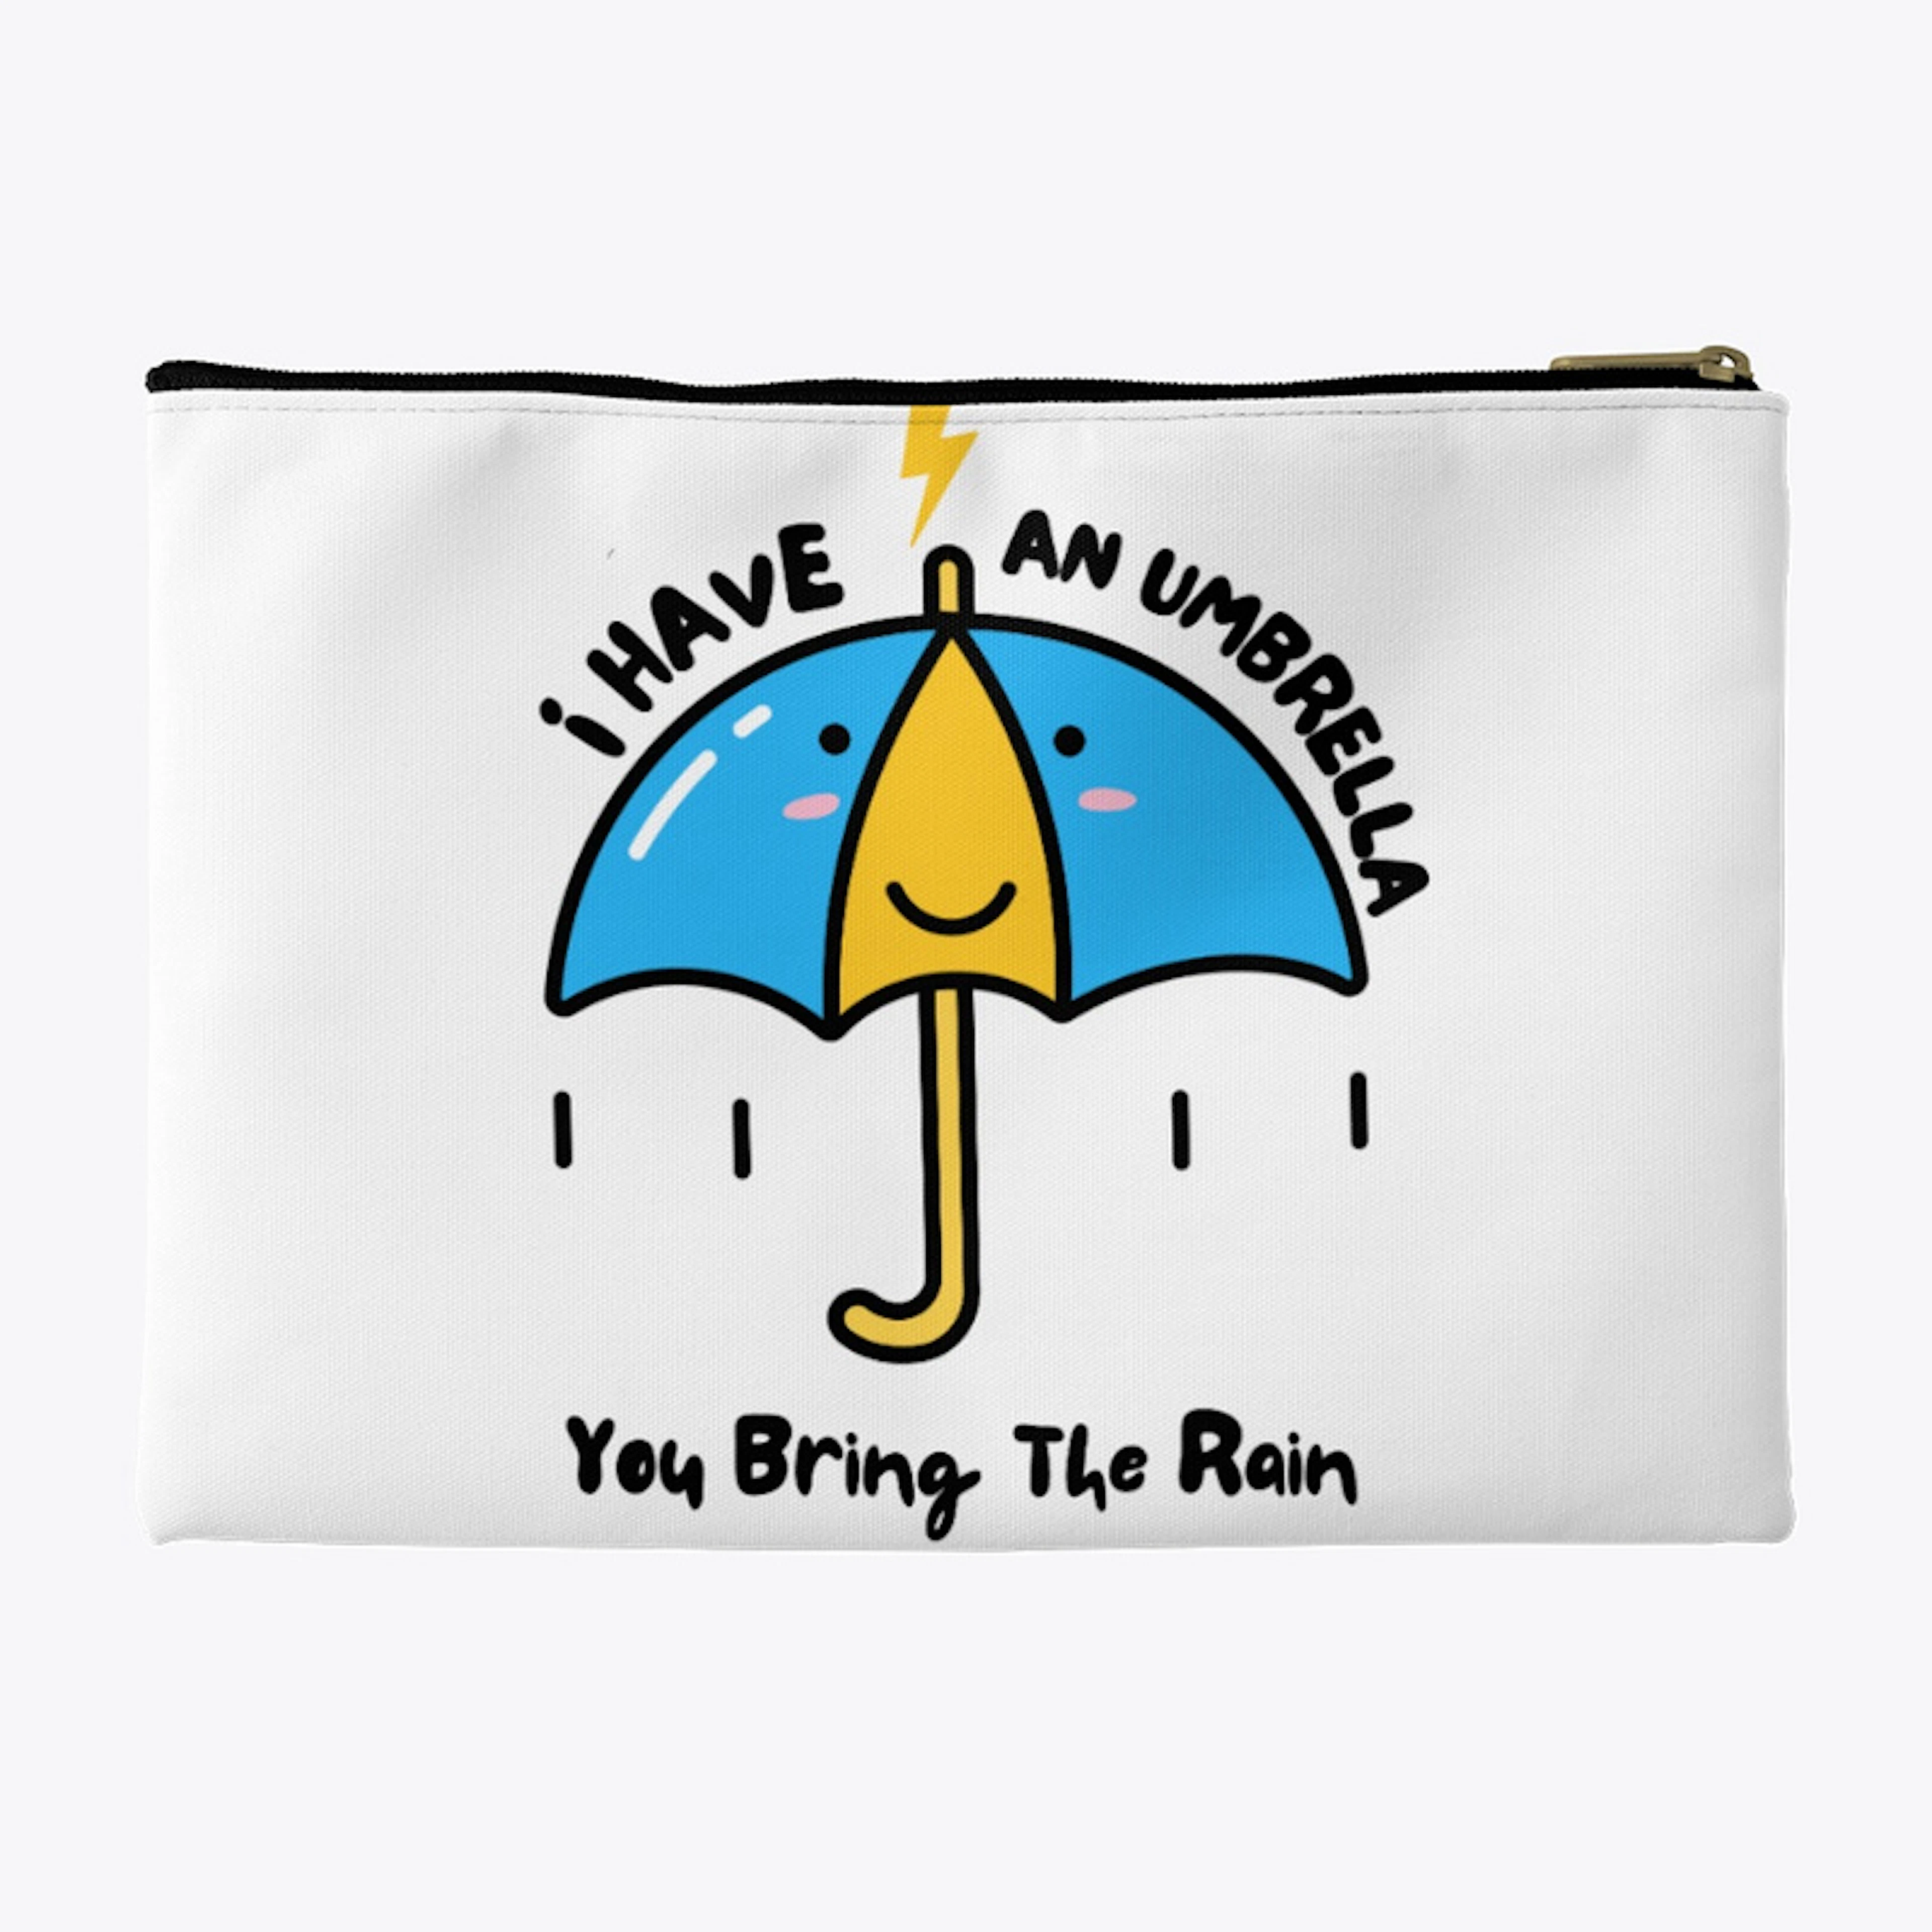 I have an umbrella, you bring rain